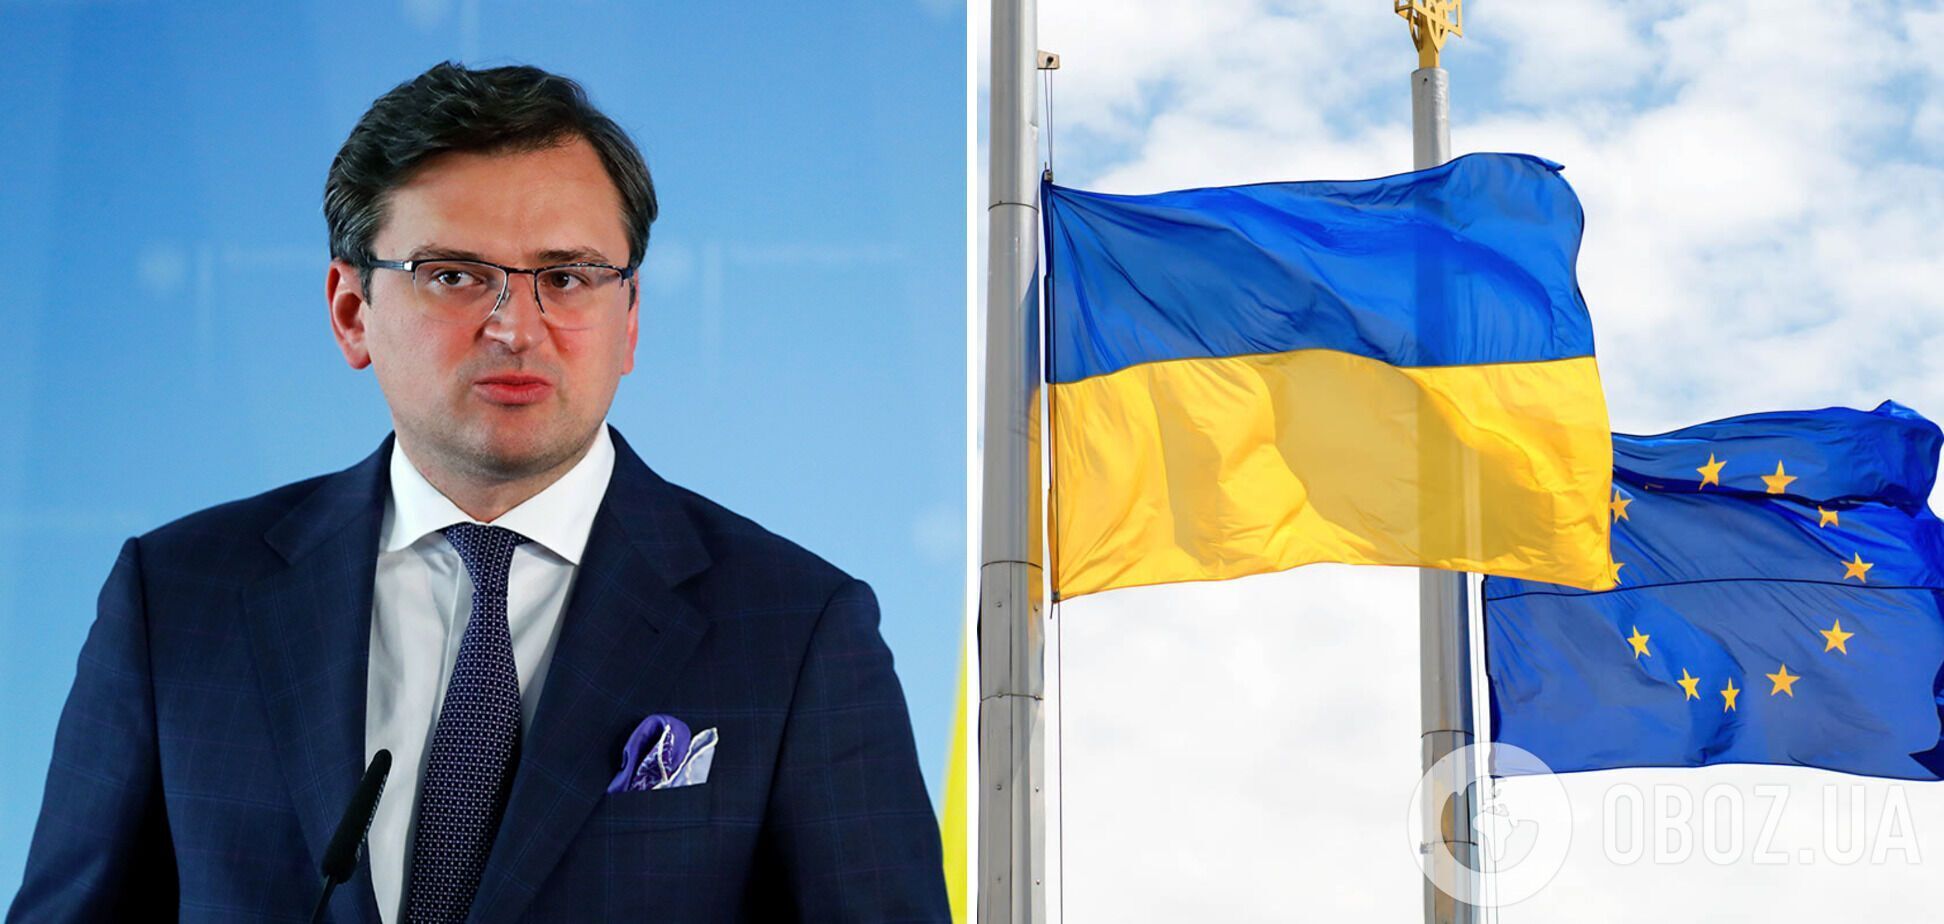 Кулеба: в ЕС существует скепсис относительно дальнейшего расширения, в том числе и евроинтеграции Украины